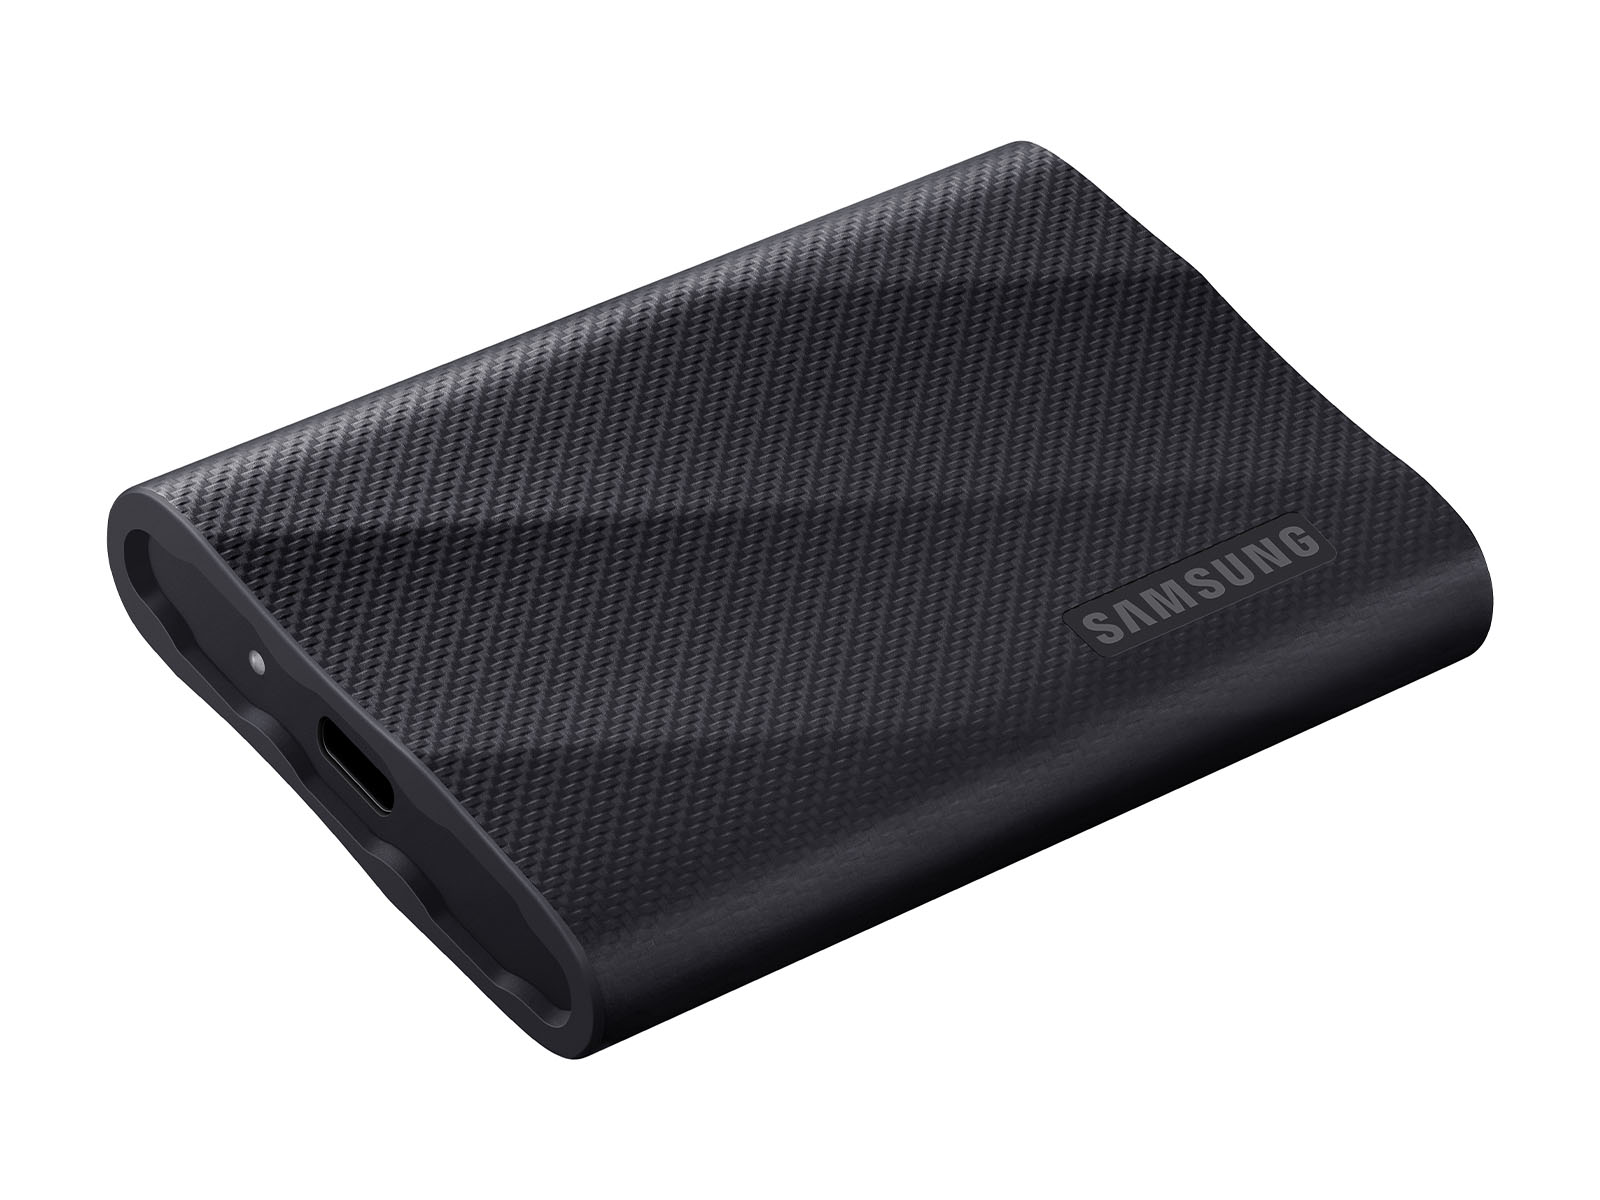 Portable SSD T9 USB 3.2 Gen2x2 2TB (Black) | Samsung US